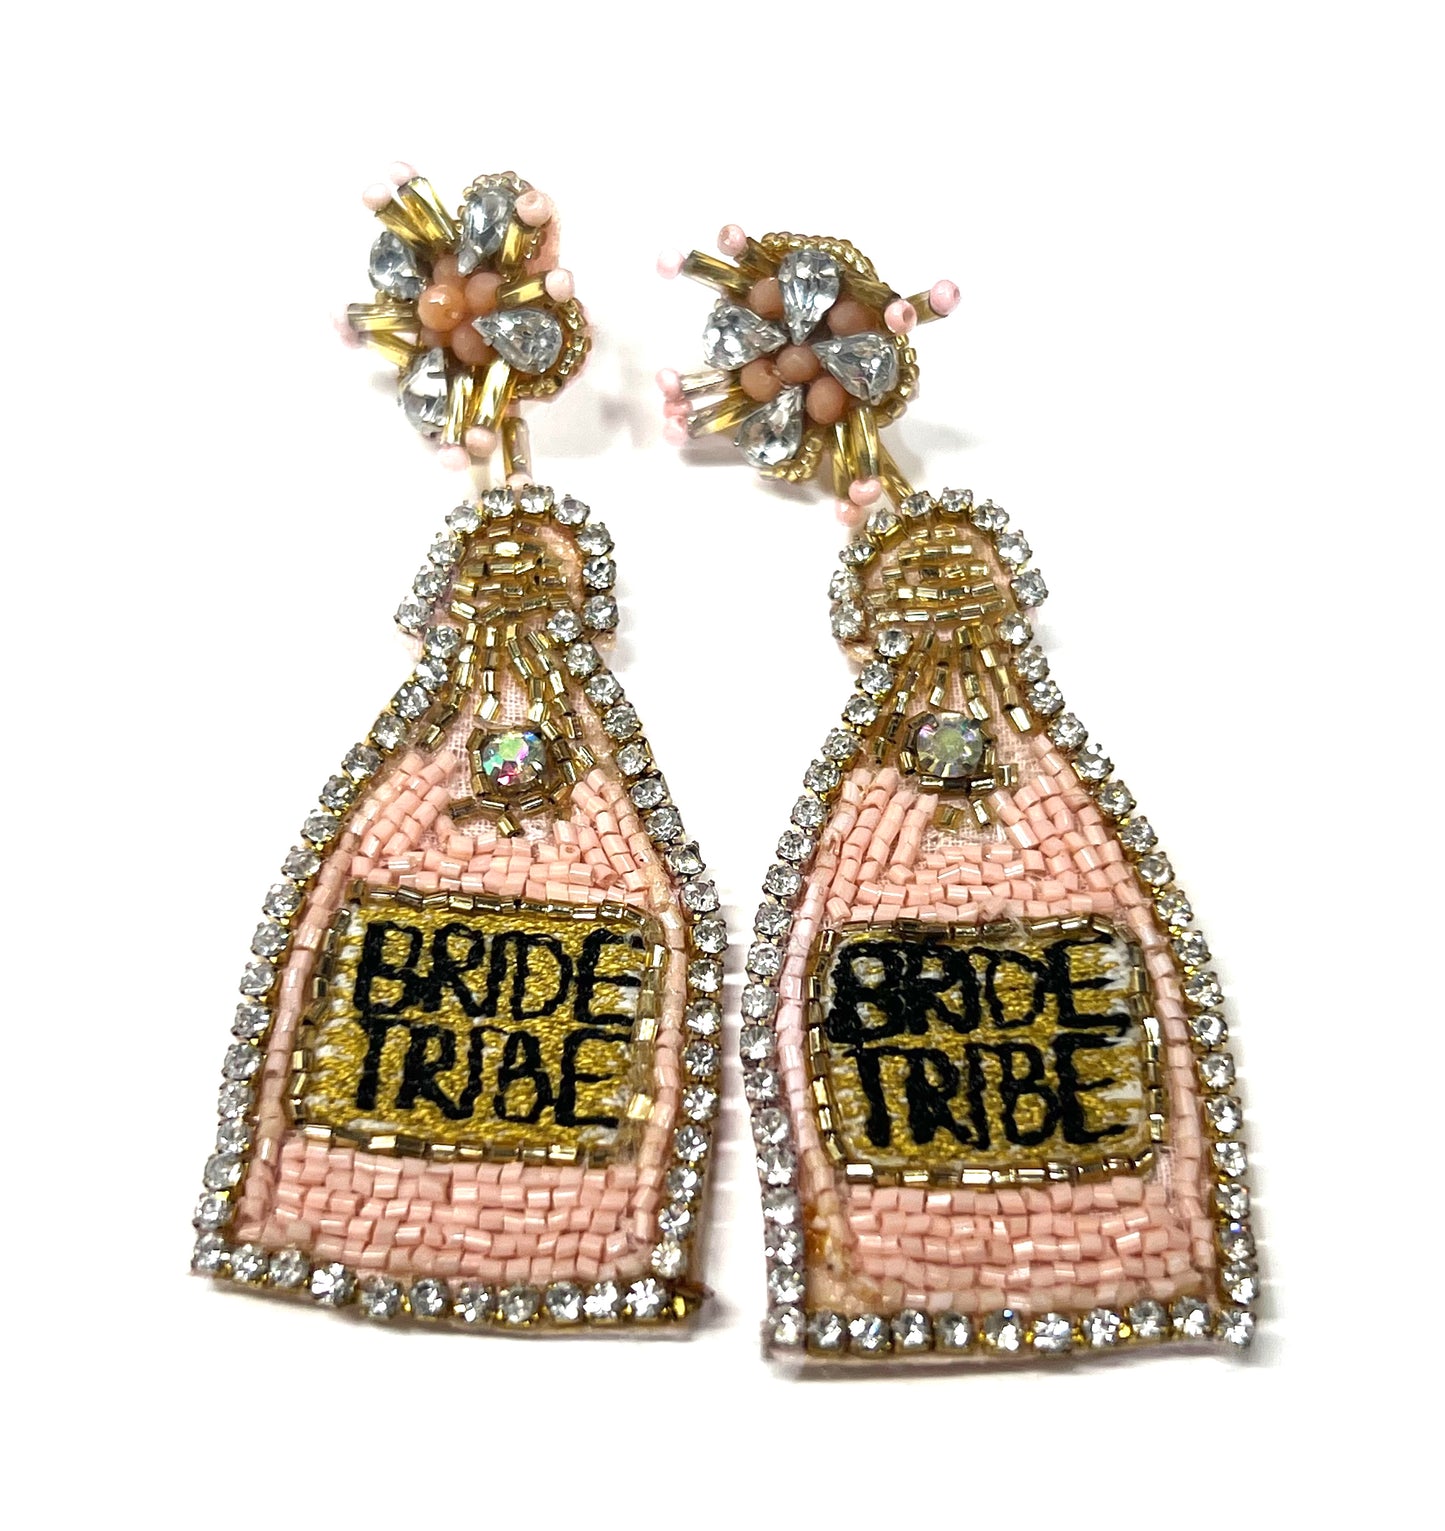 Bride Tribe Bottle Seed Bead Earrings-Earrings-Kenze Pannee-04/25-The Twisted Chandelier